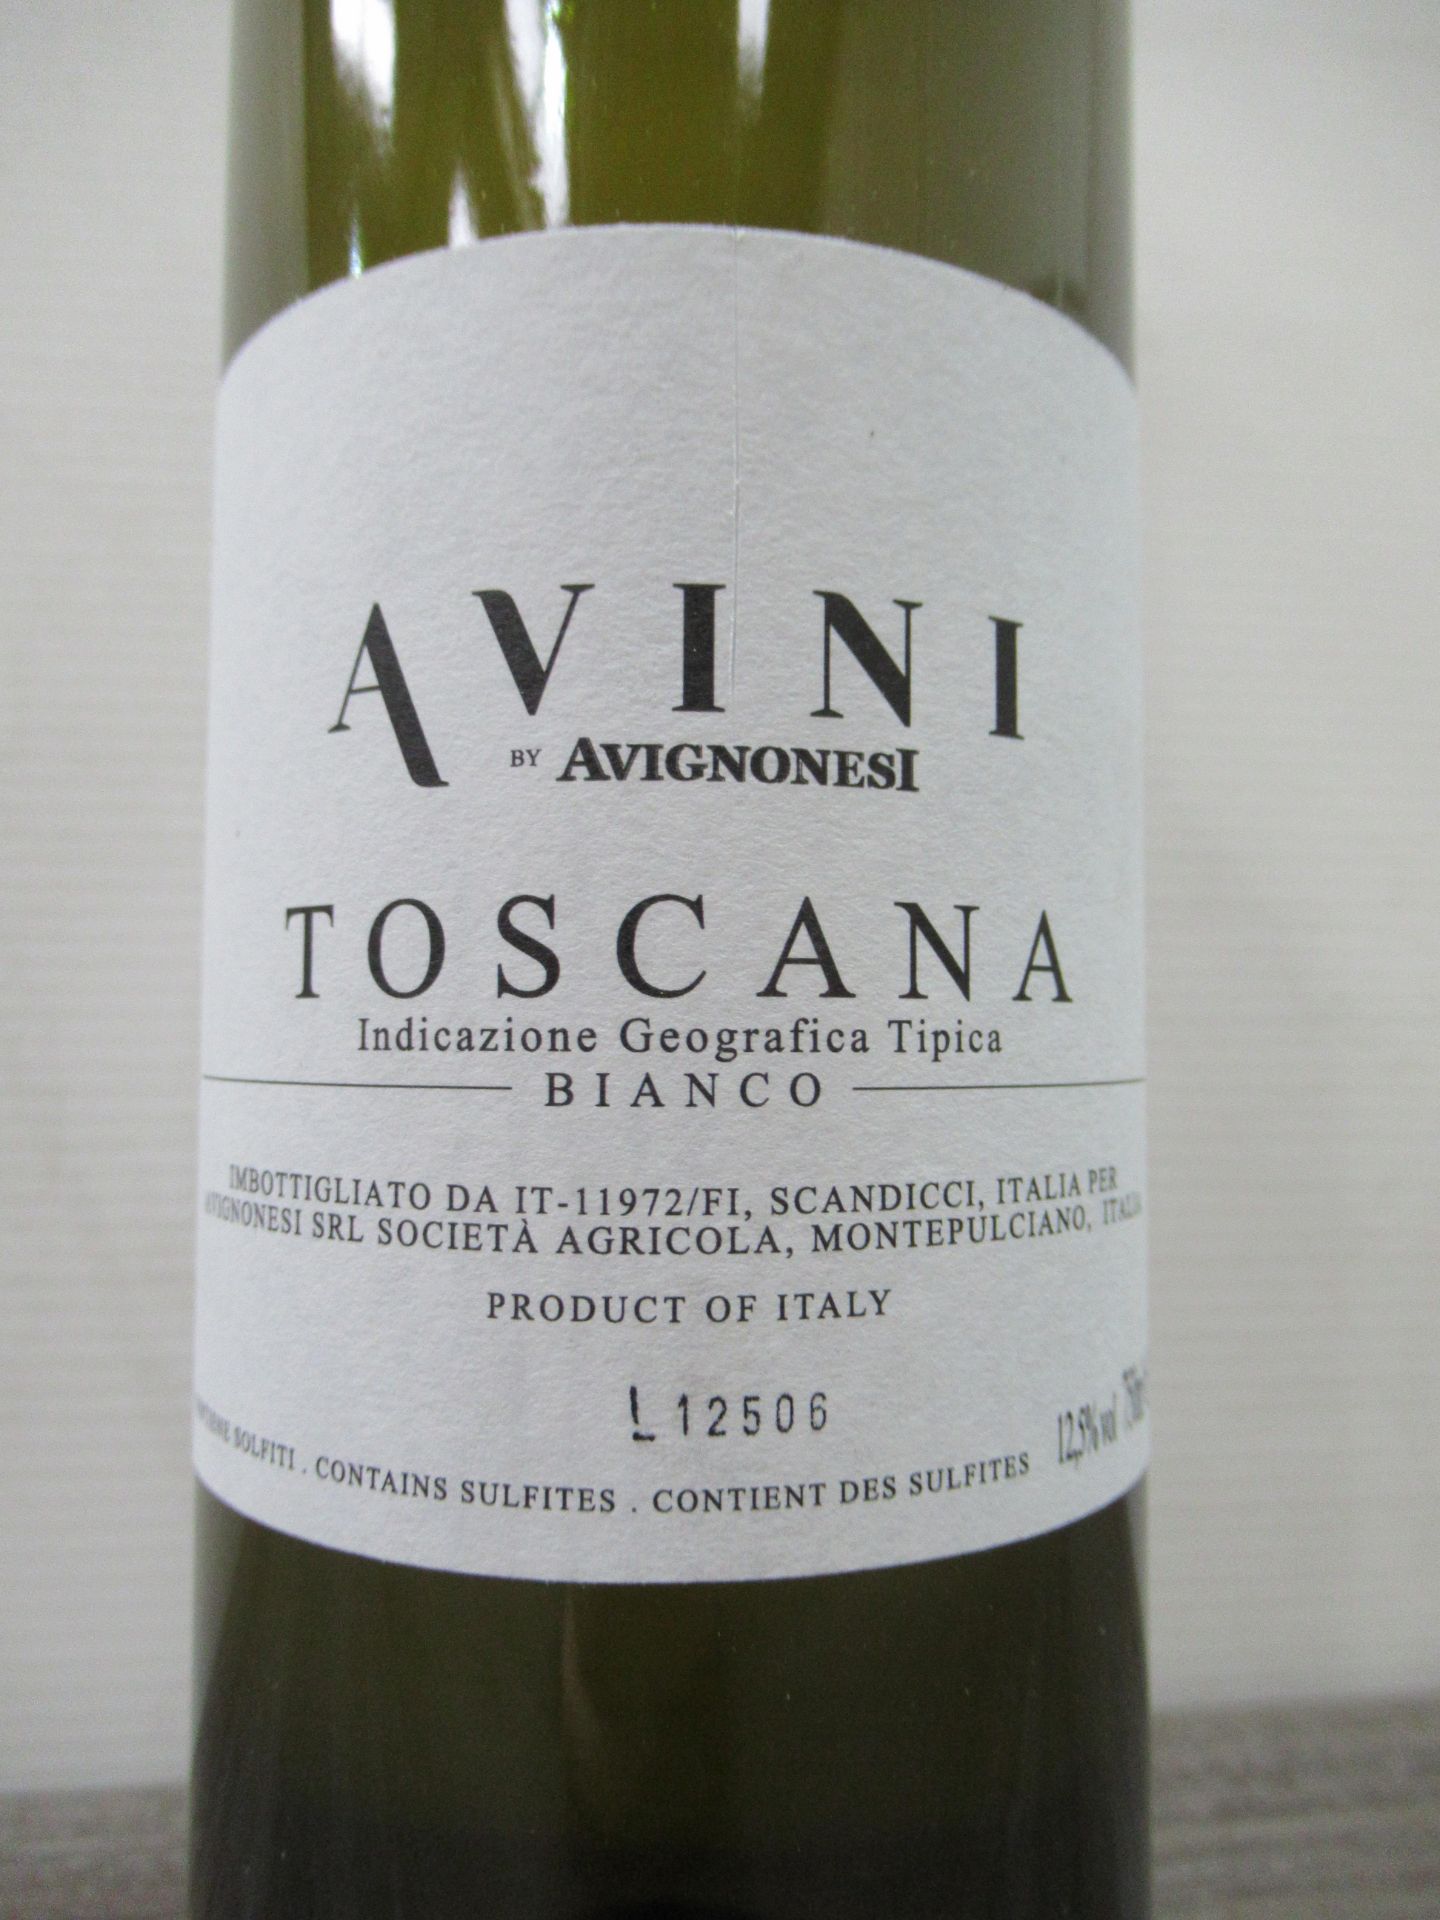 36 x Bottles "3 Cases" of Avini Avignonesi Toscana Bianco 2015 - Image 3 of 4